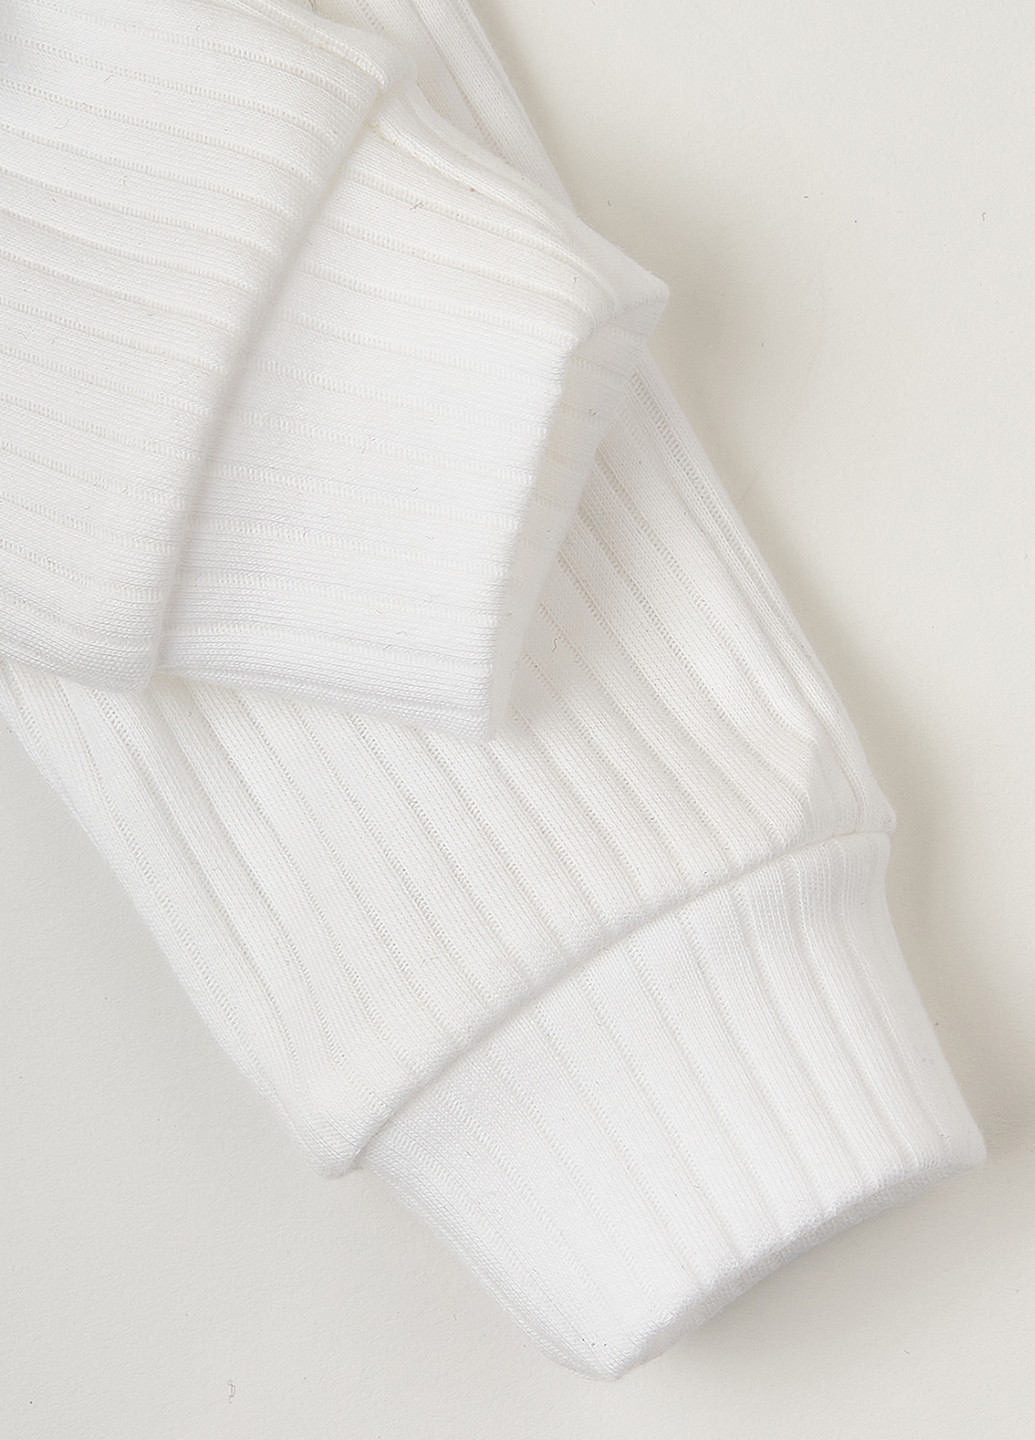 KRAKO штаны полоска белые для малышей белый повседневный хлопок производство - Украина